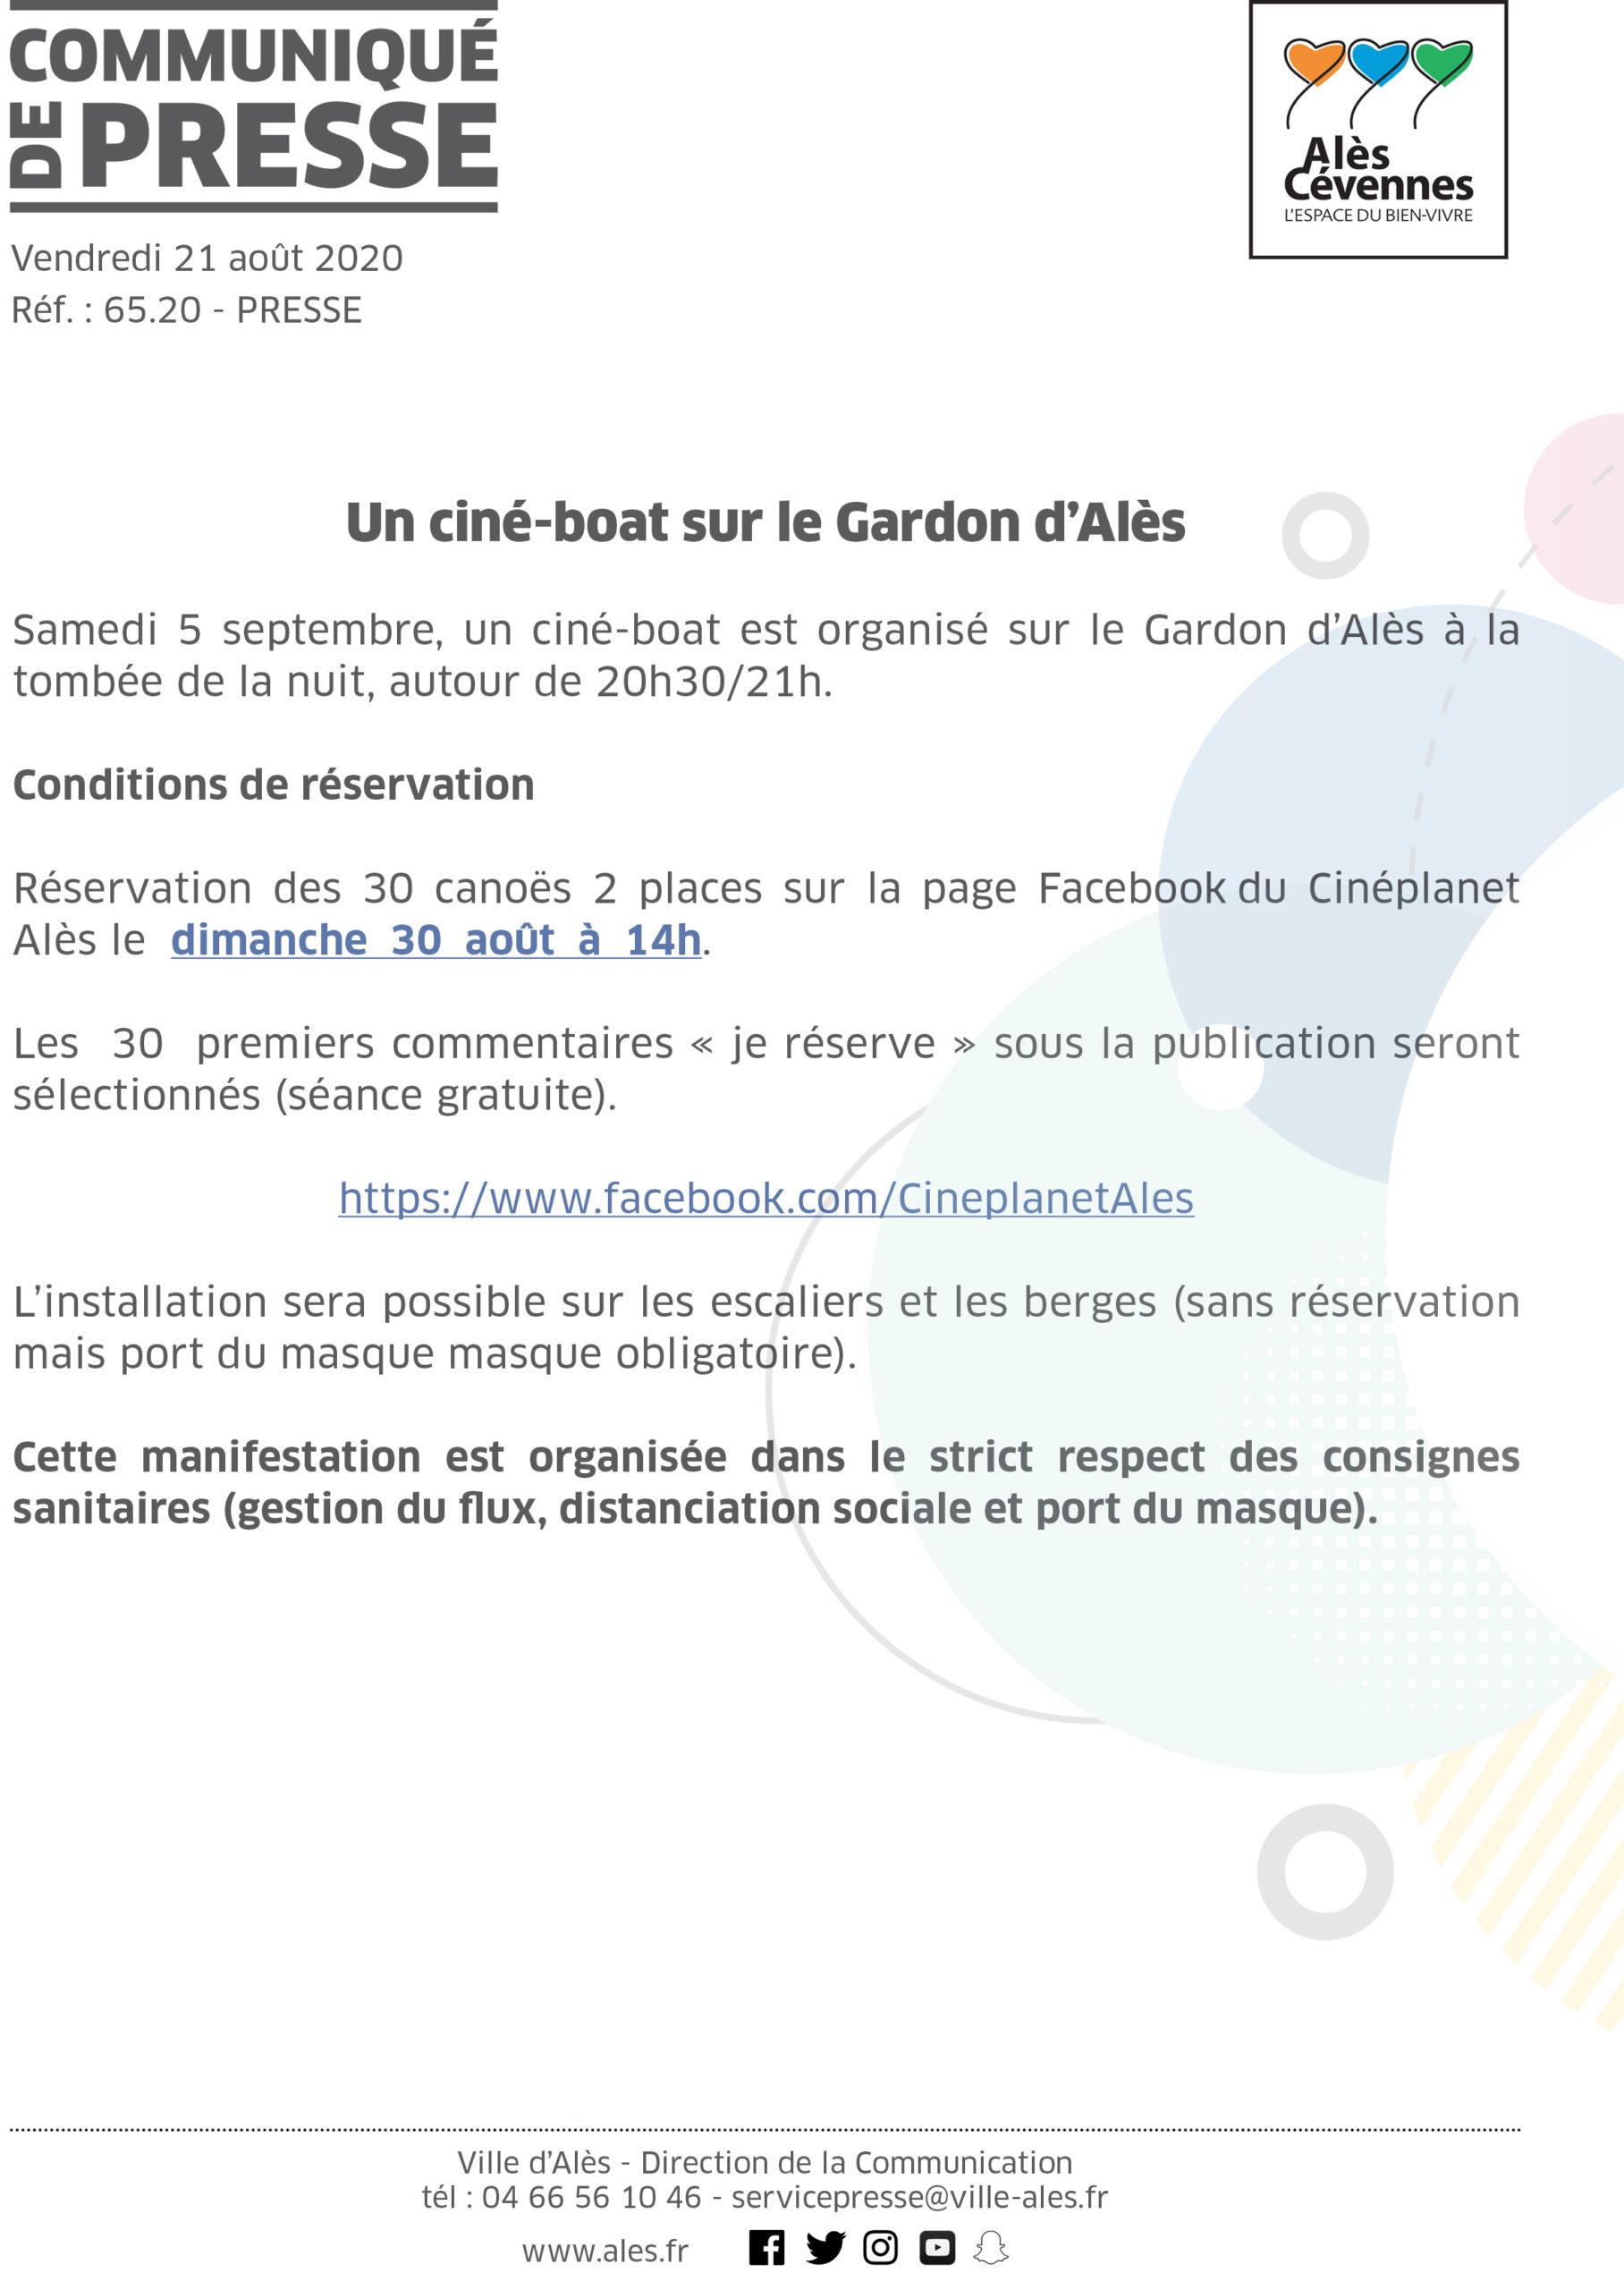 COMMUNIQUÉ DE PRESSE – Un ciné-boat sur le Gardon d’Alès le samedi 5 septembre 2020